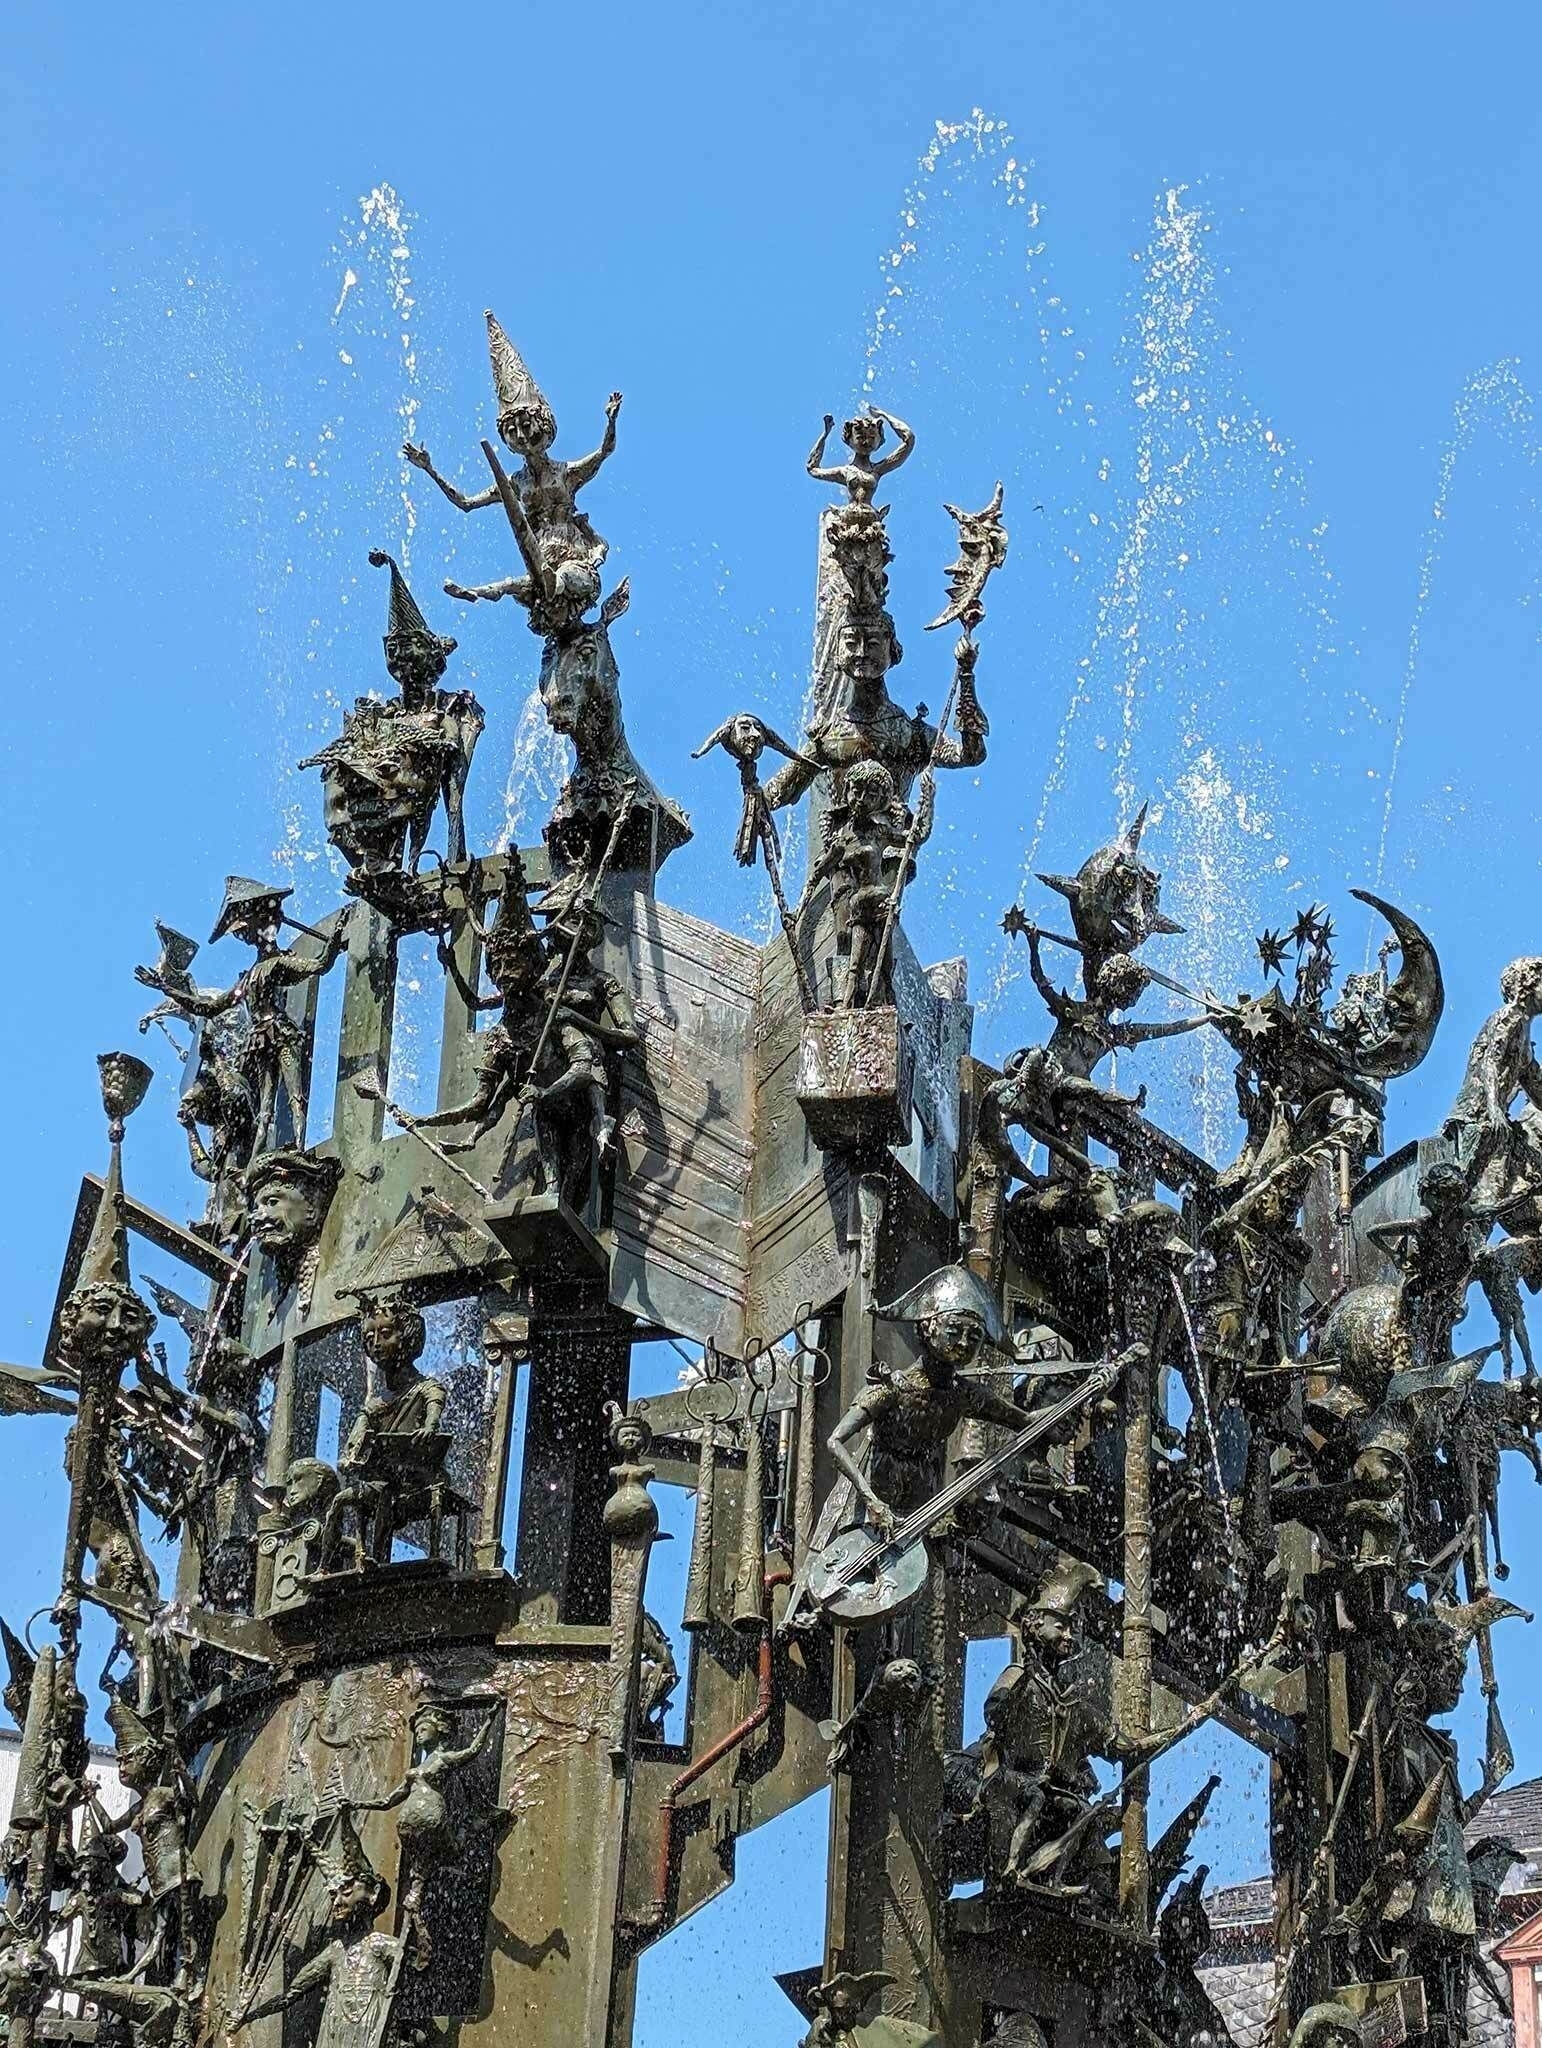 Fastnachtsbrunnen in Mainz